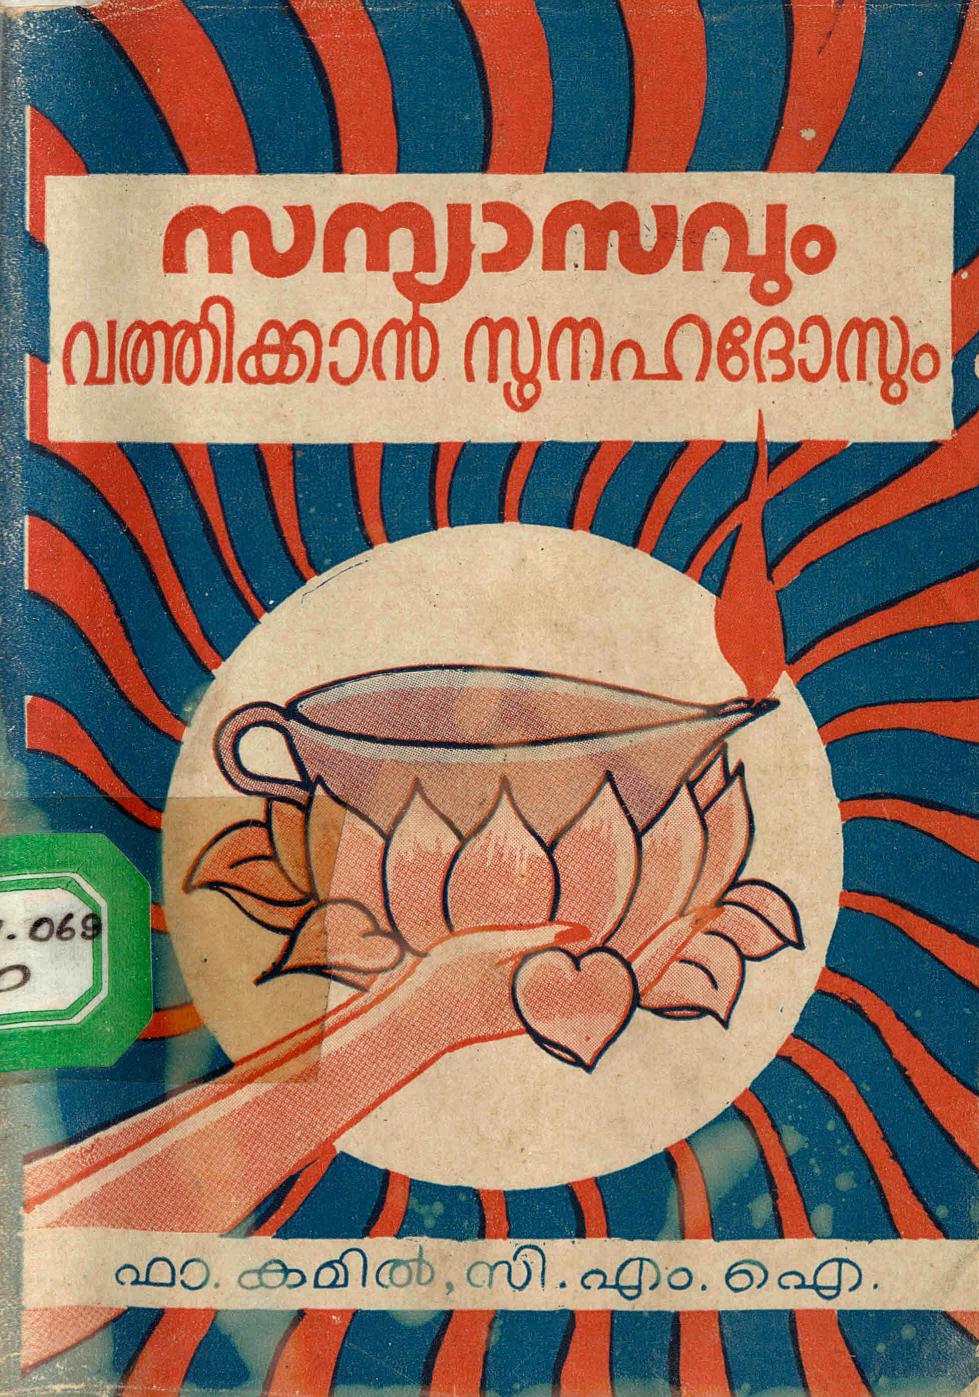  1973 - സന്യാസവും വത്തിക്കാൻ സൂനഹദോസും - കമിൽ. സി. എം. ഐ